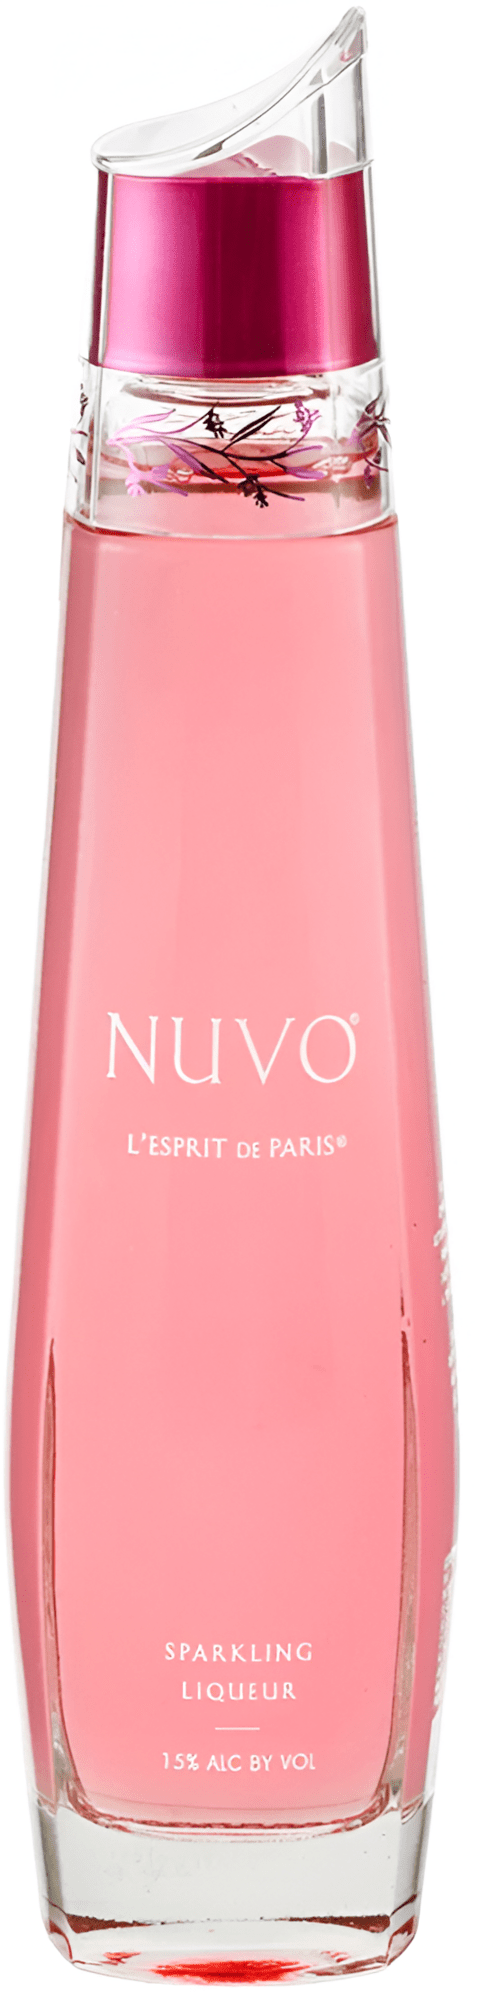 E-shop Nuvo L'Esprit de Paris Sparkling